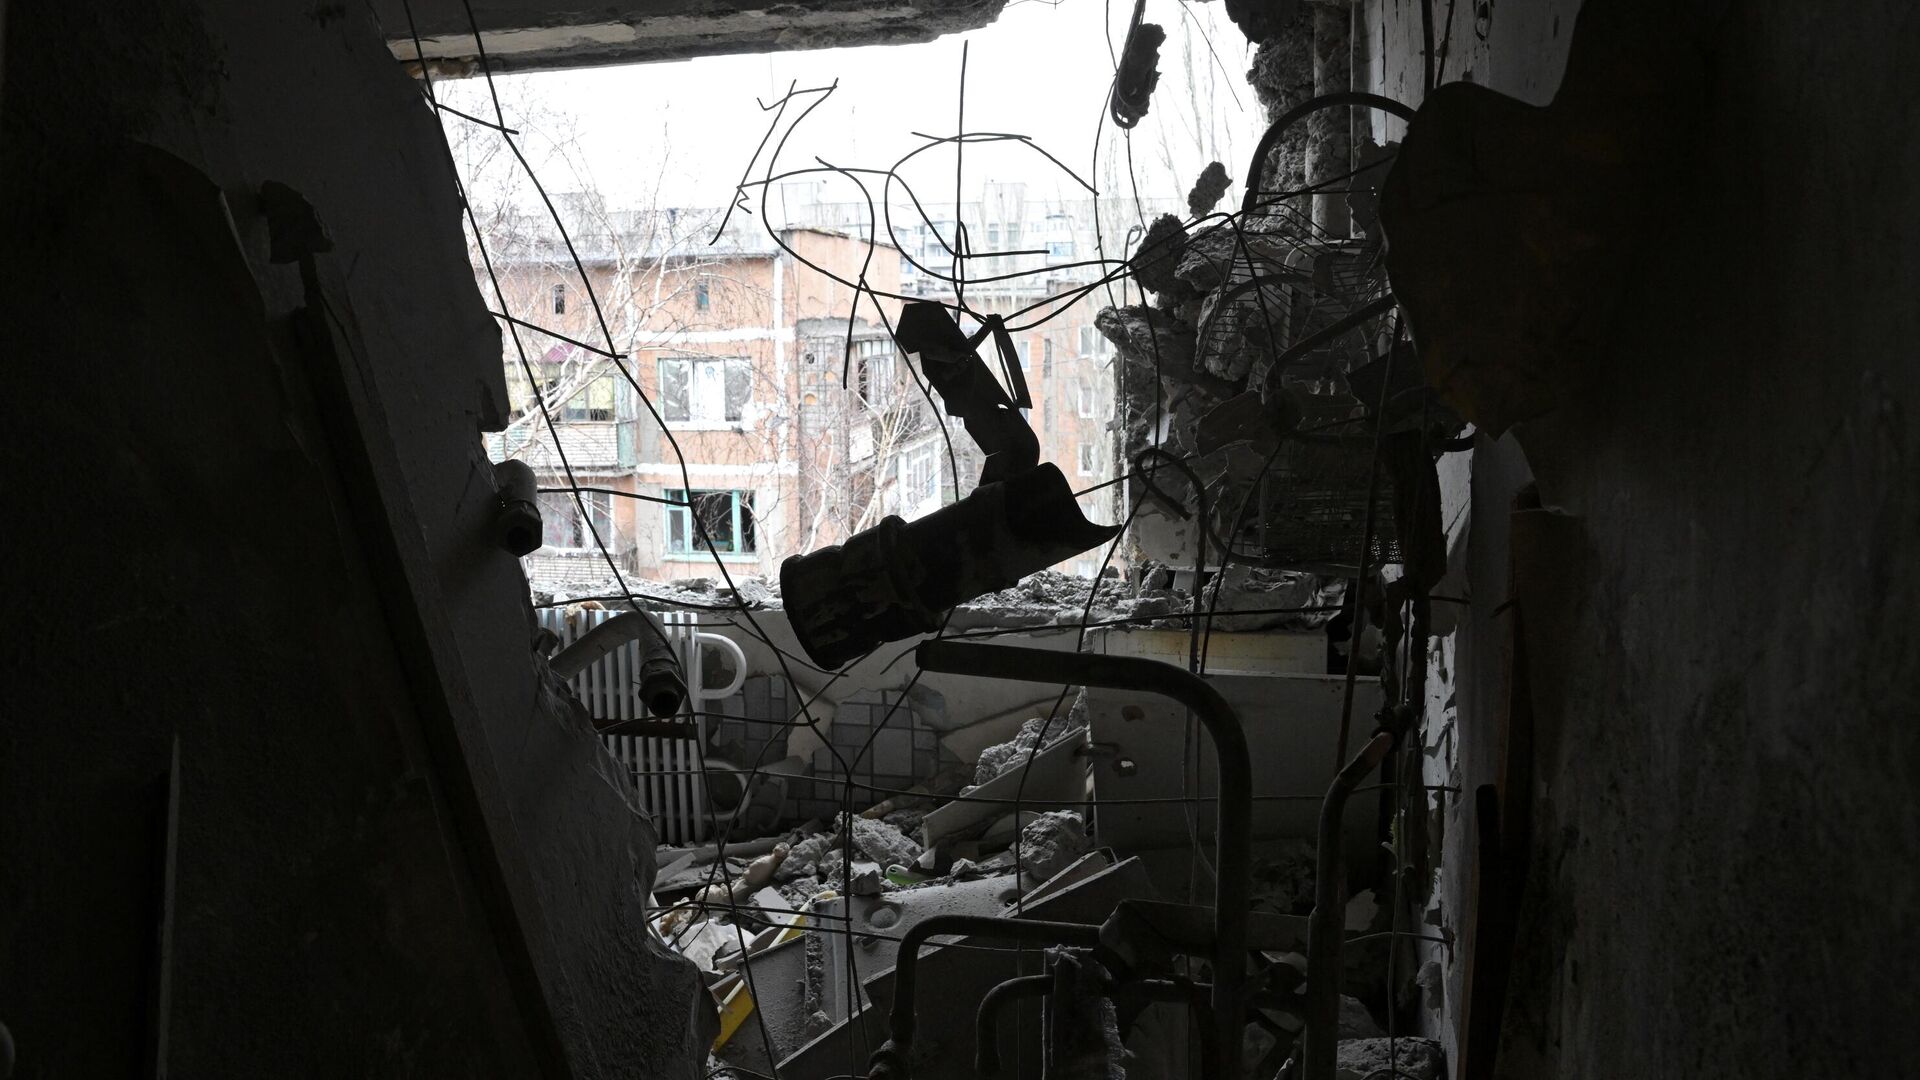 Квартира, пострадавшая в результате попадания снаряда в жилой дом в Горловке - РИА Новости, 1920, 27.07.2022